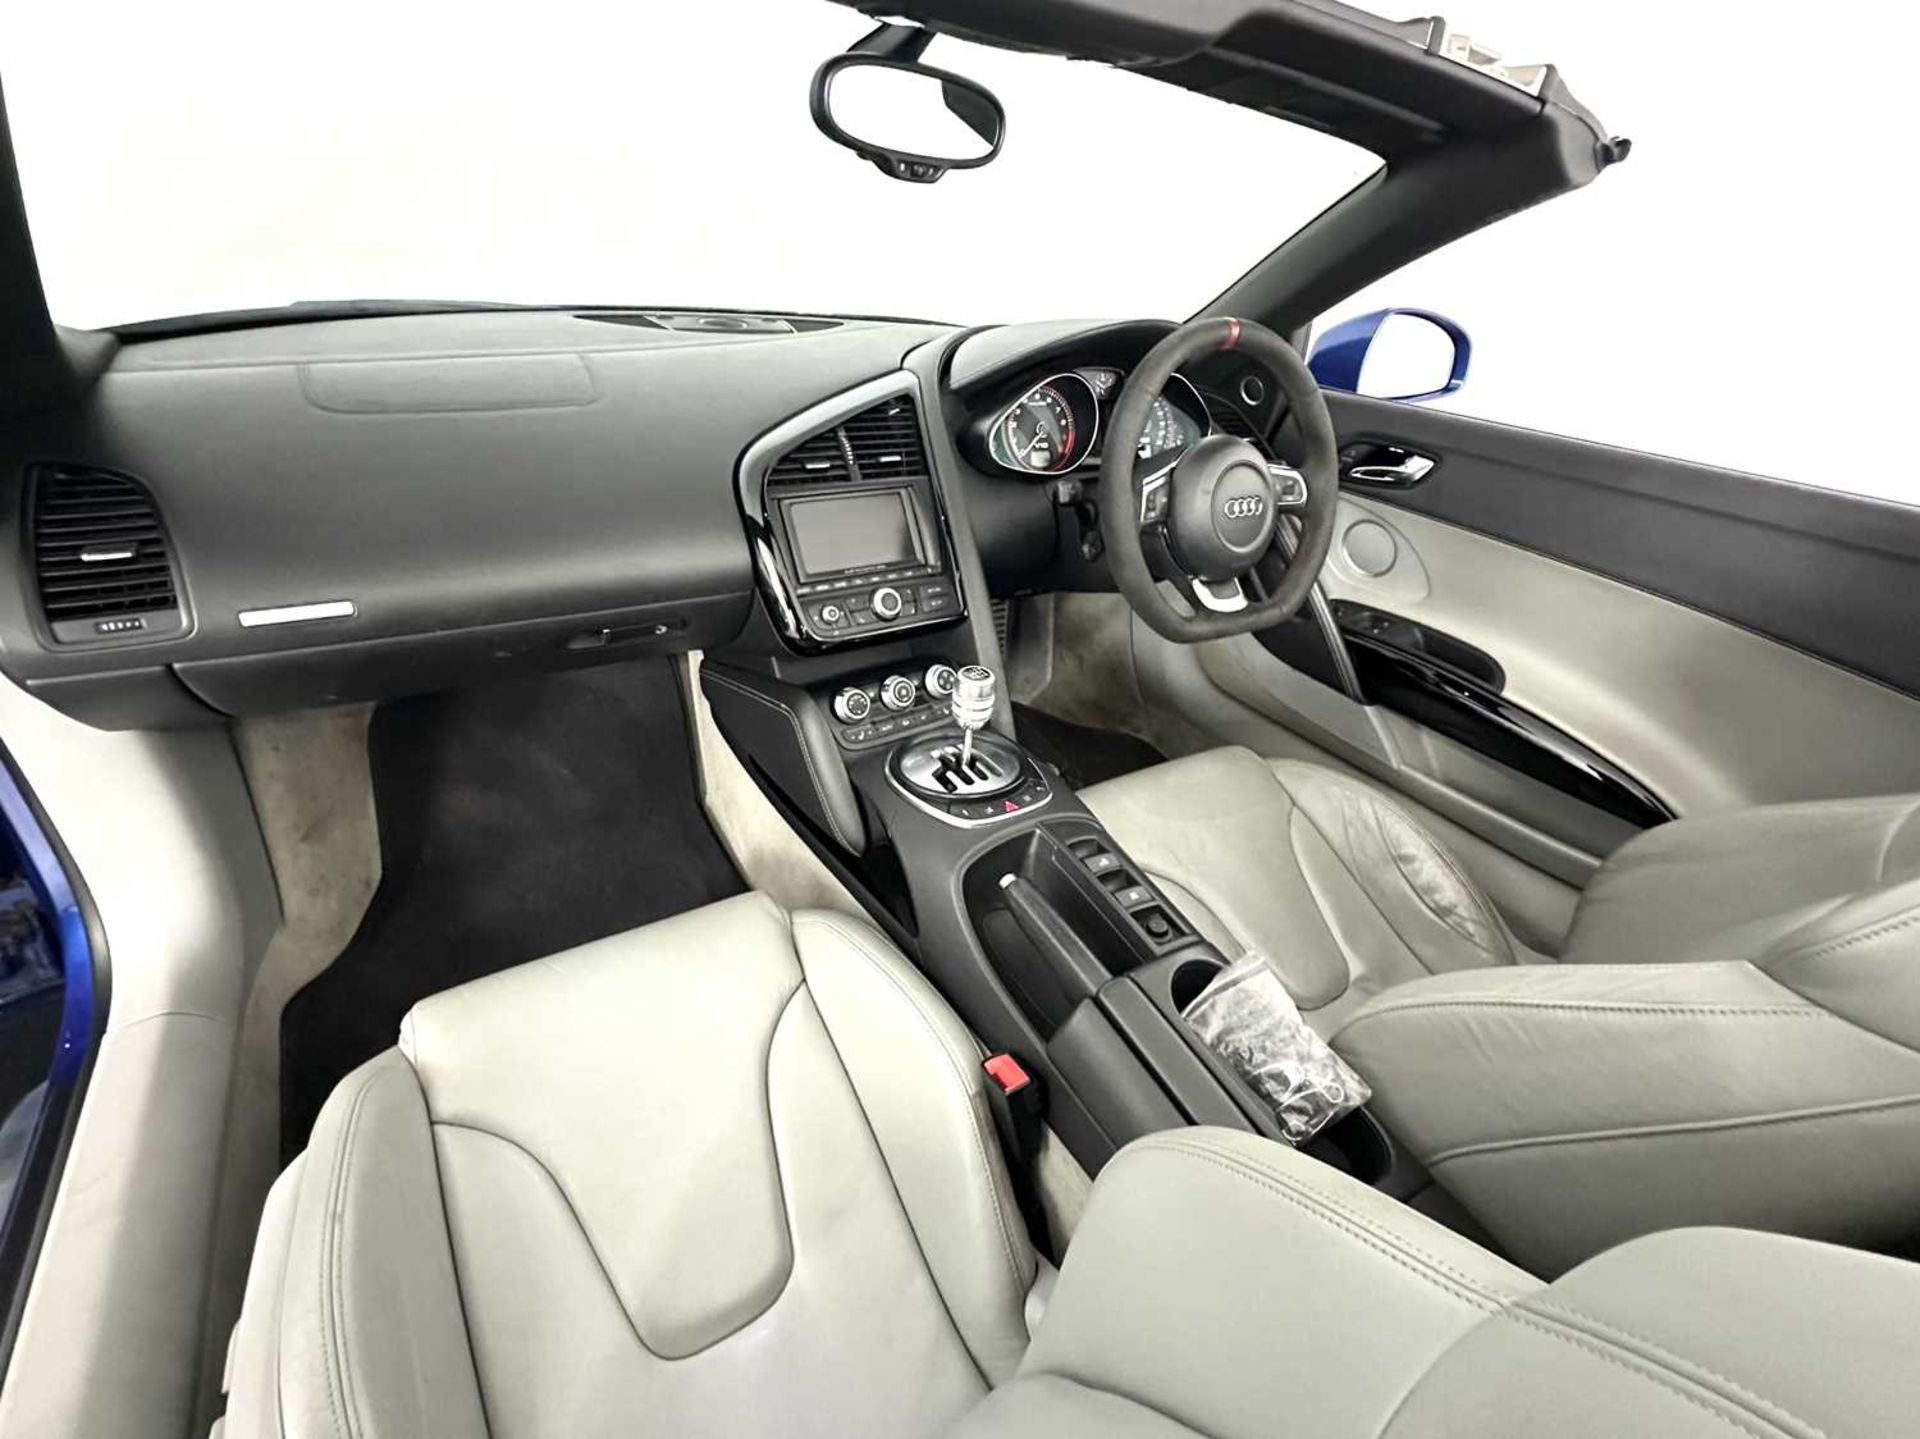 2010 Audi R8 Spyder - Image 25 of 33